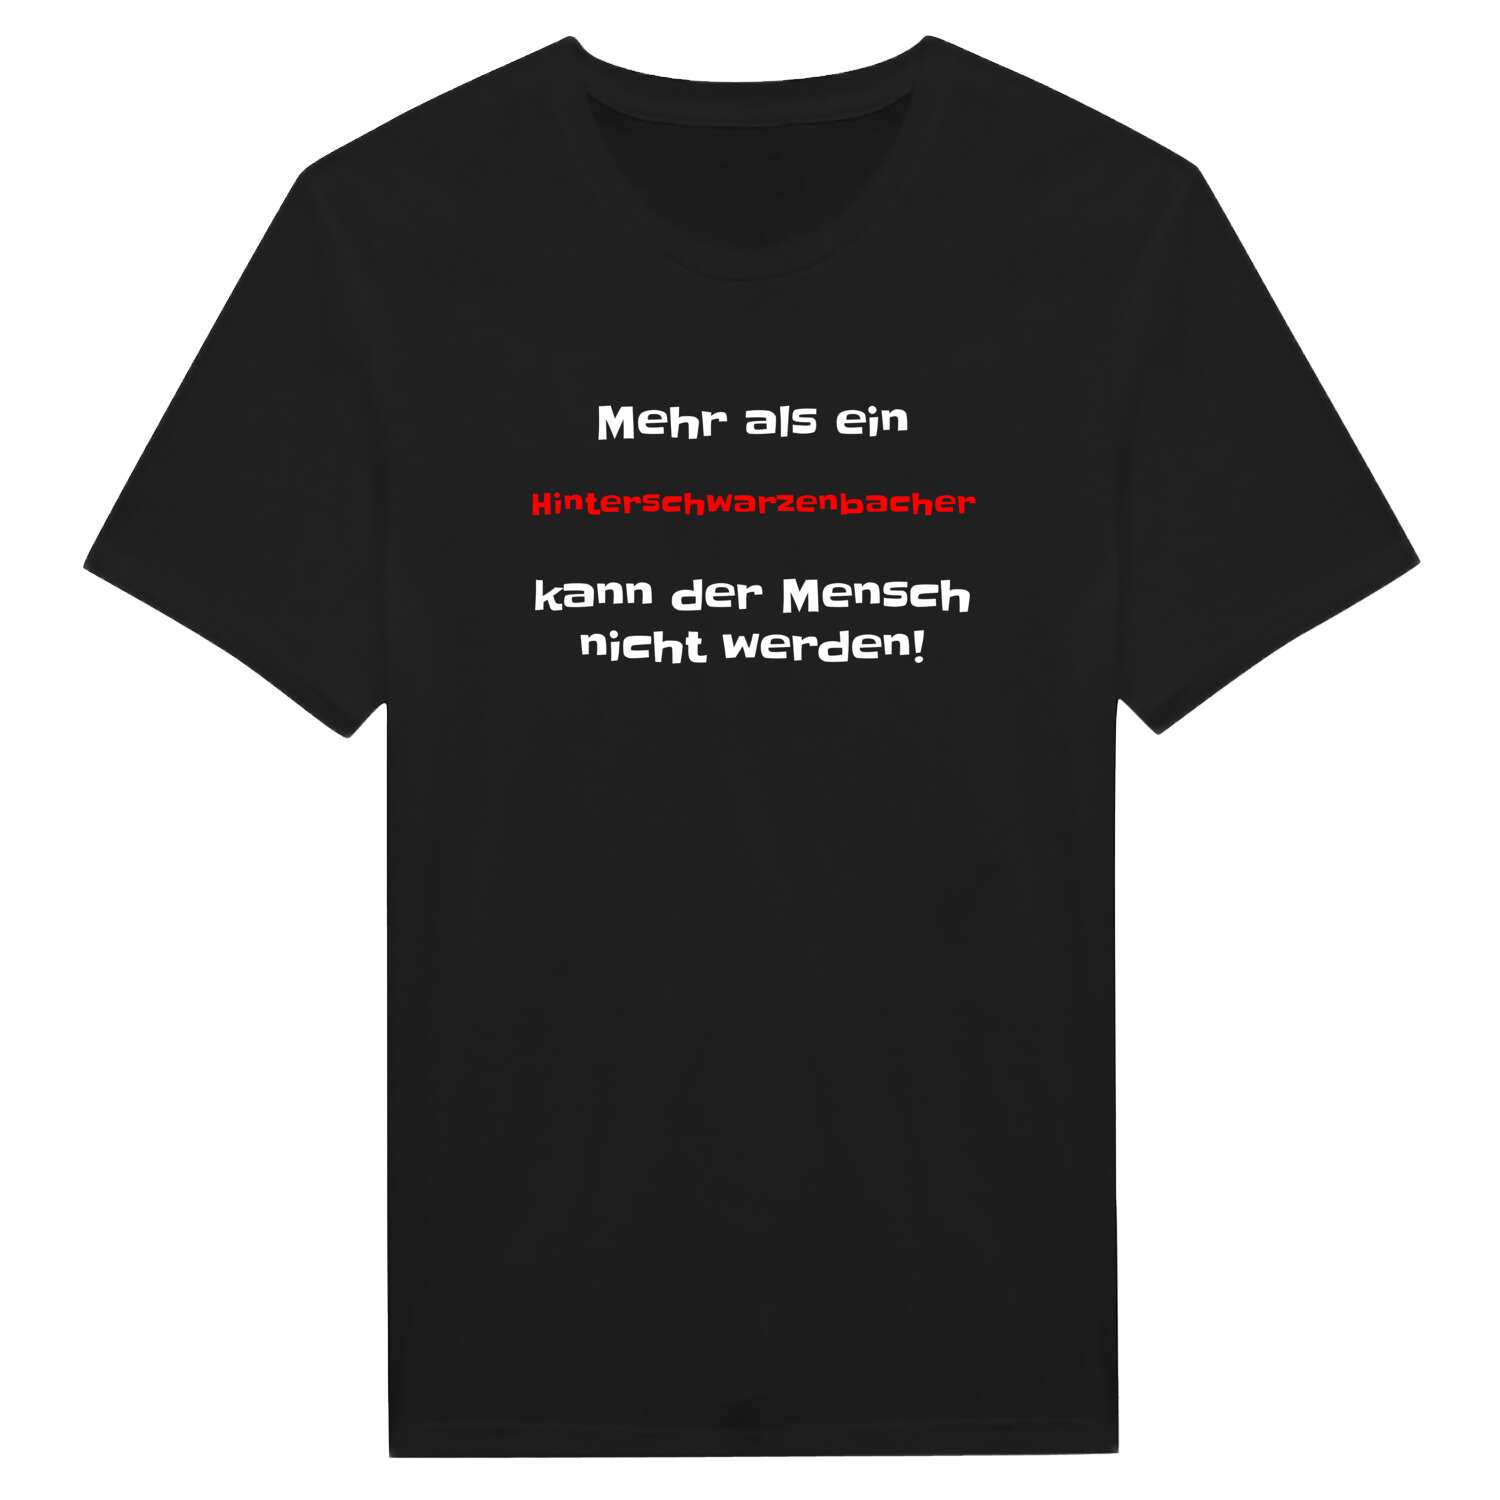 Hinterschwarzenbach T-Shirt »Mehr als ein«